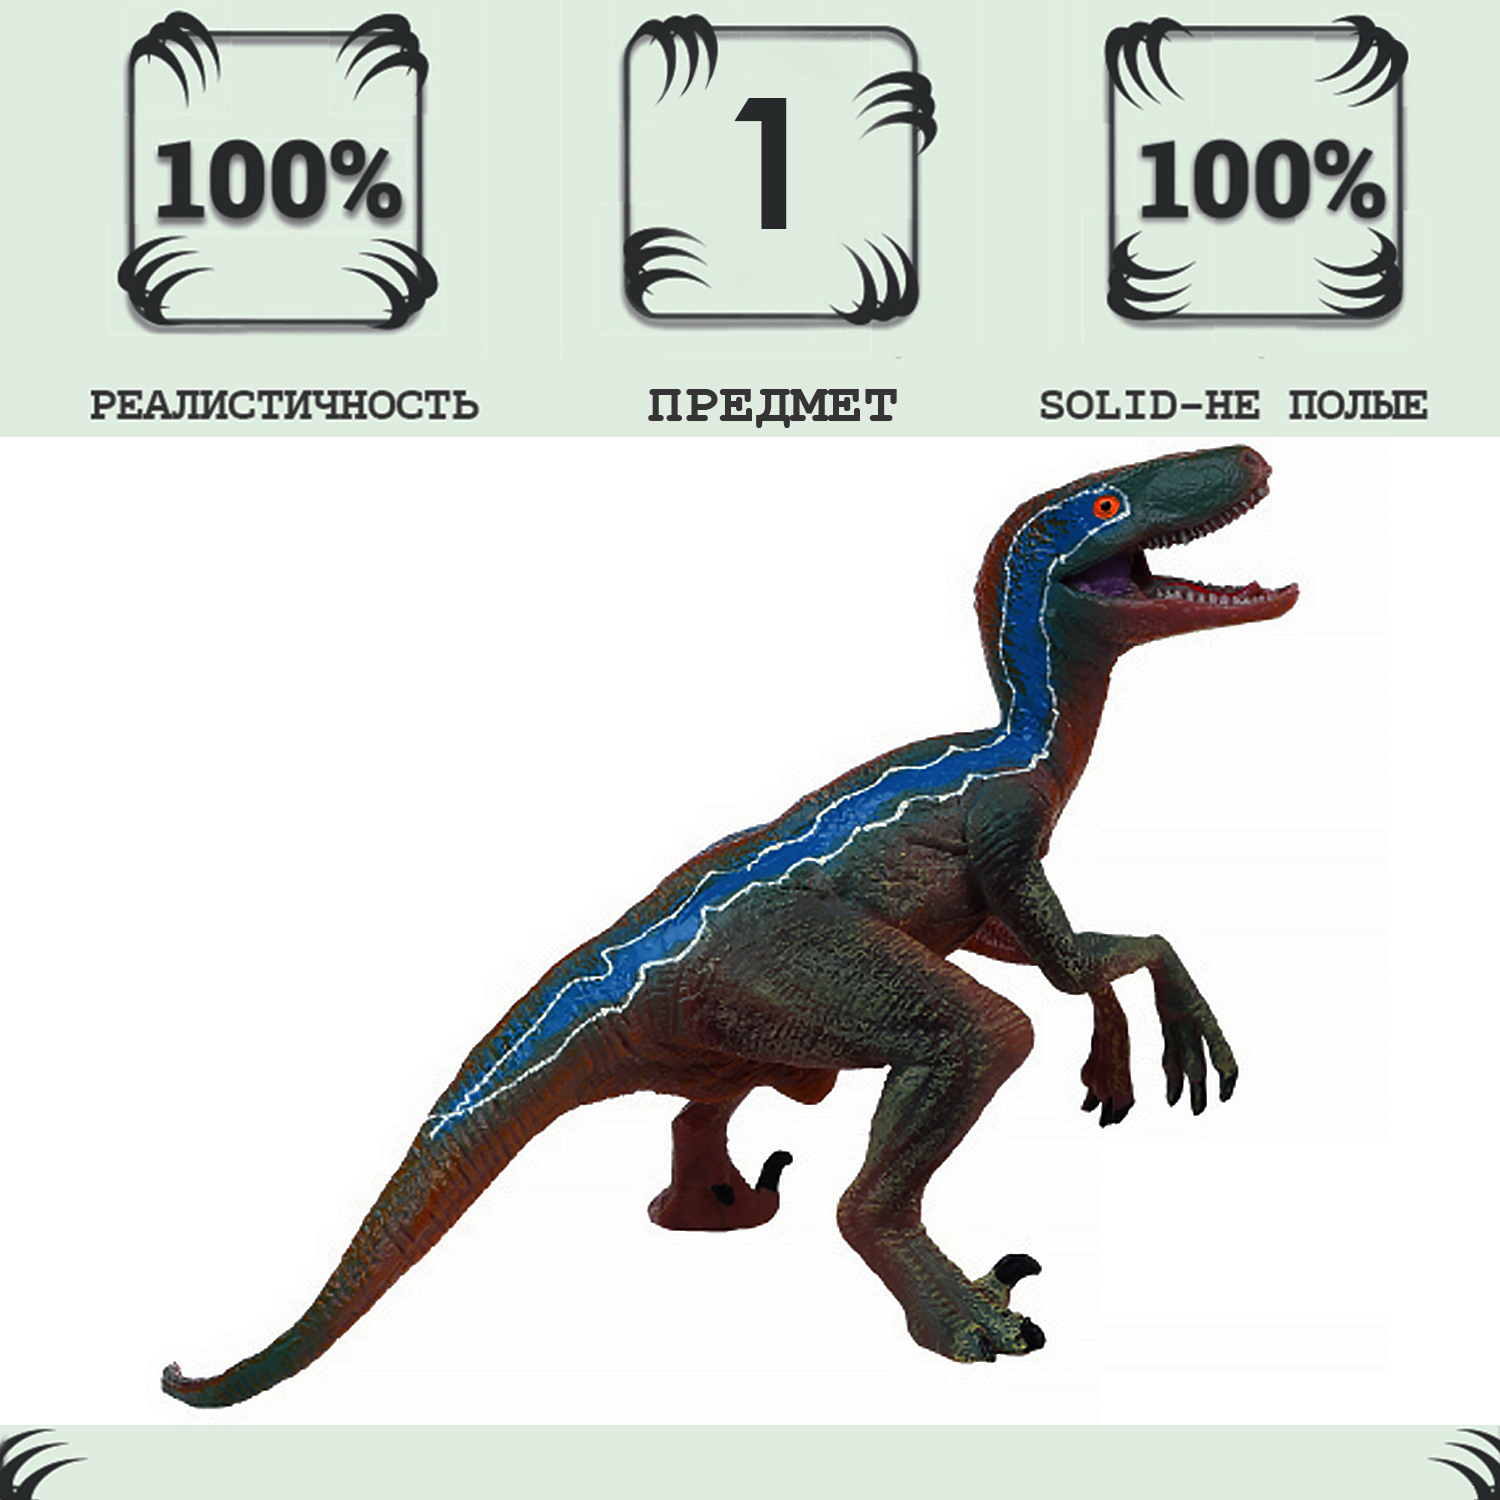 Игрушка динозавр серии Мир динозавров Masai Mara Велоцираптор MM216-067 1toy robolife игрушка робо велоцираптор т21040